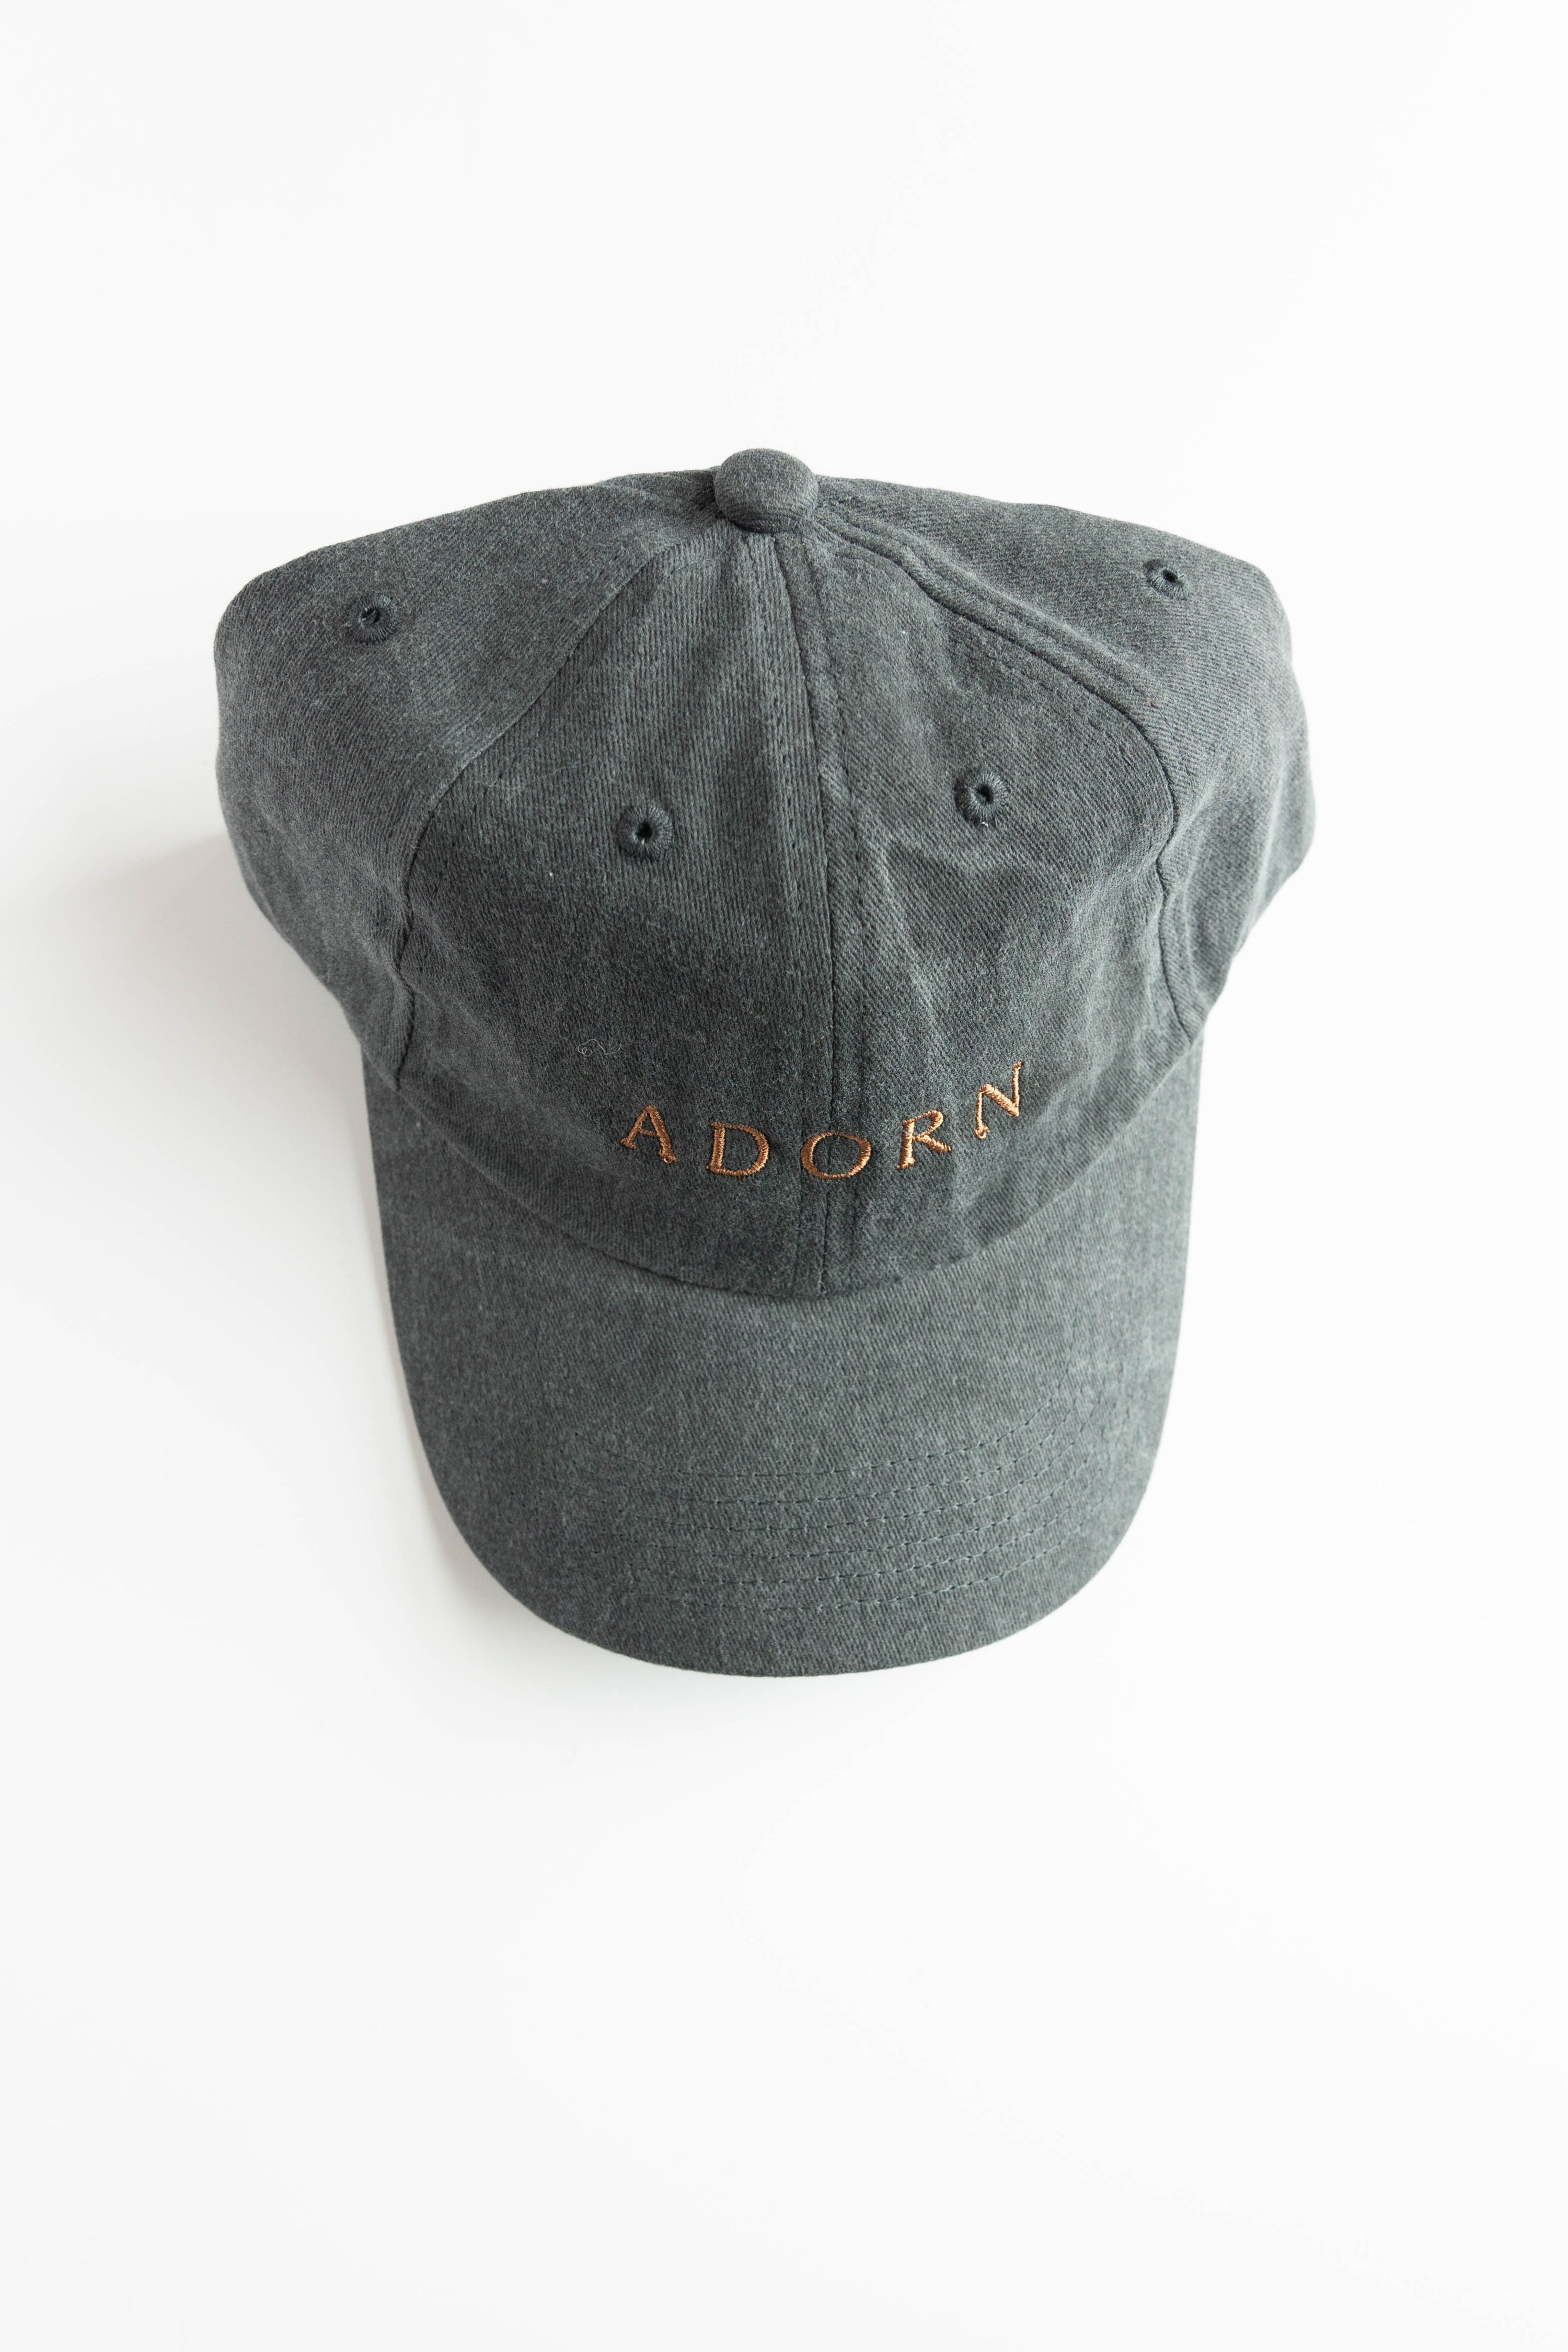 Adorn Dad Hat